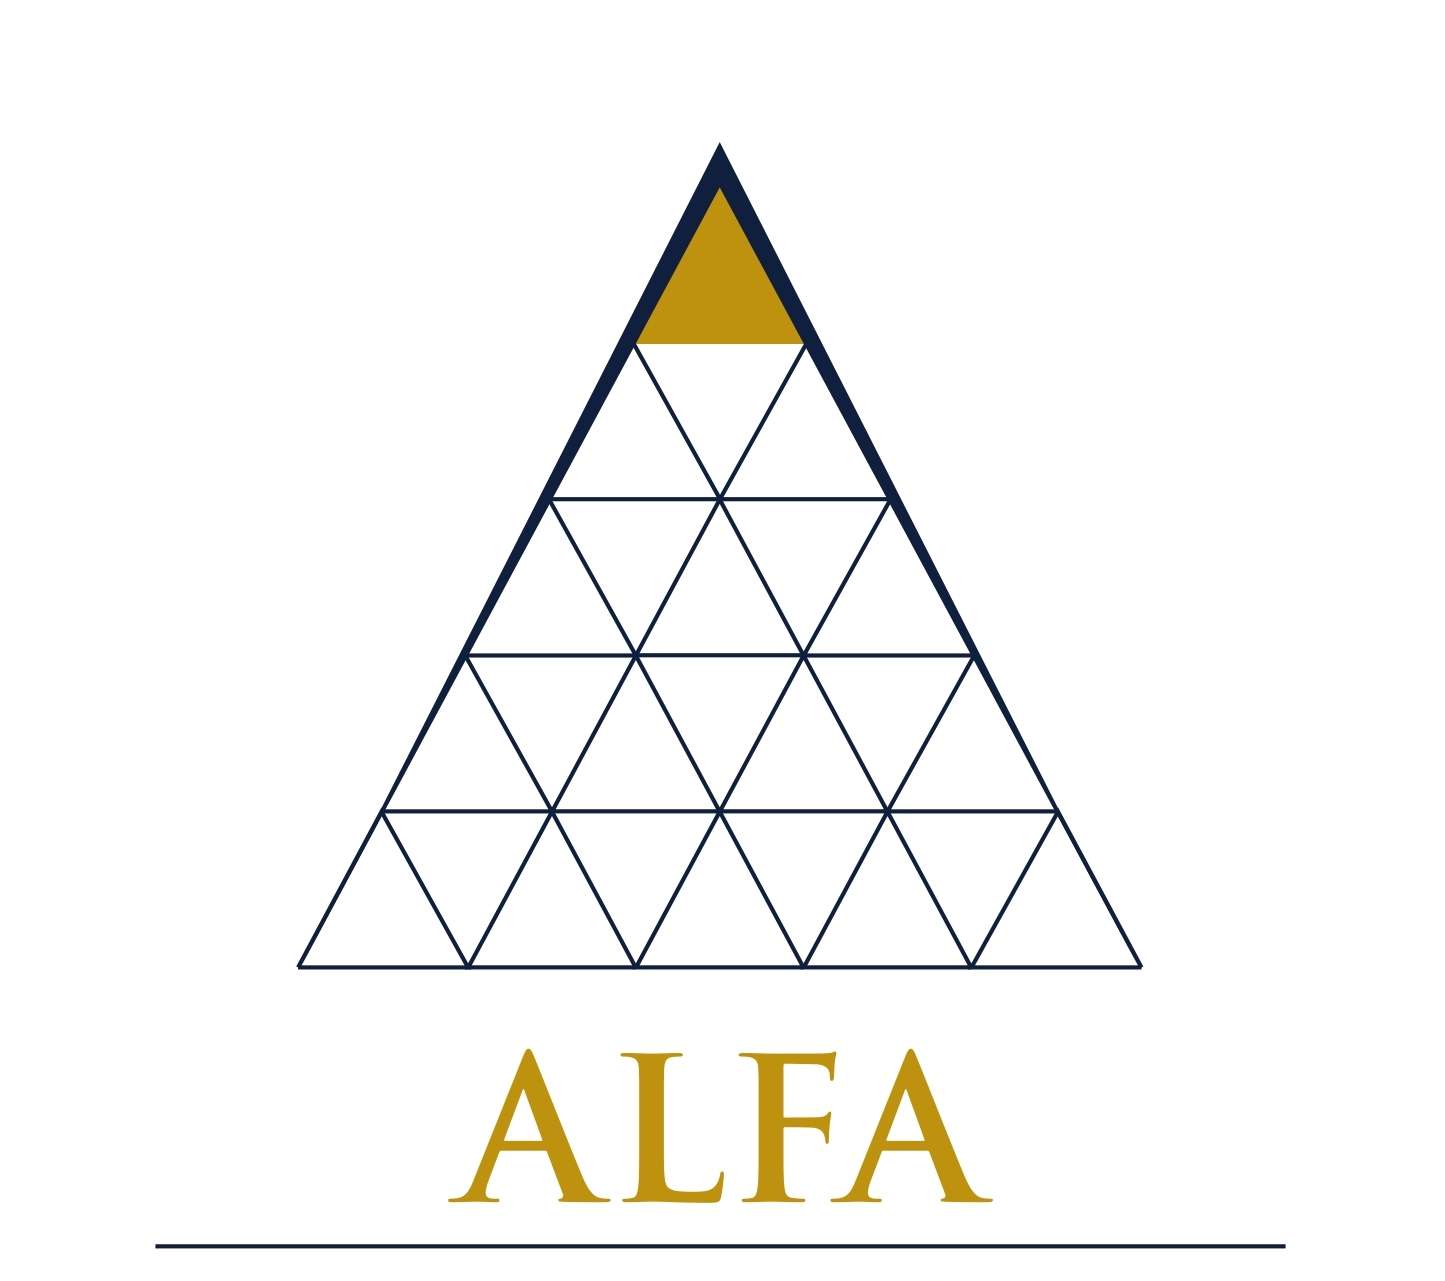 Foto do logotipo do ALFA ARRENDAMENTO MERCANTIL S.A.